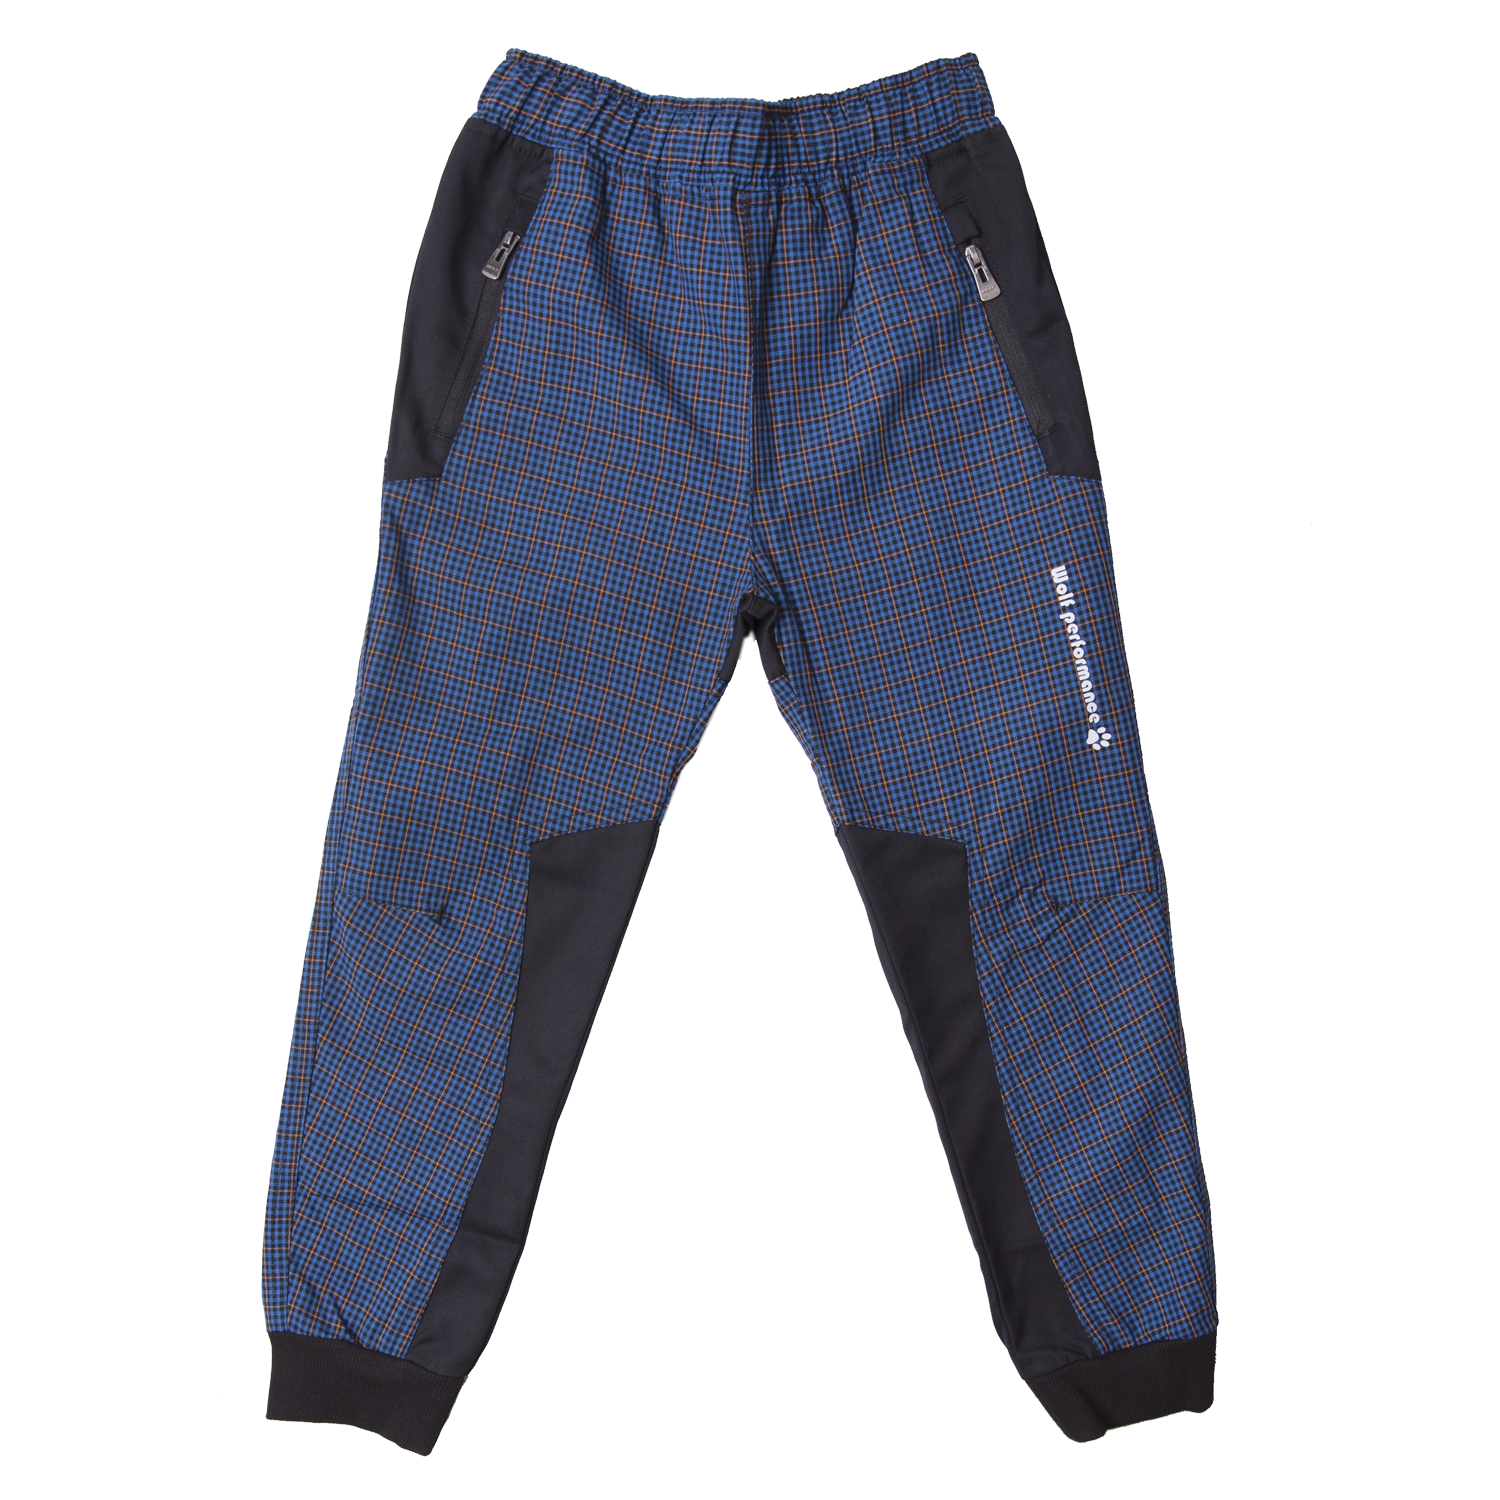 Chlapecké plátěné kalhoty - Wolf T2155, modrá Barva: Modrá, Velikost: 98